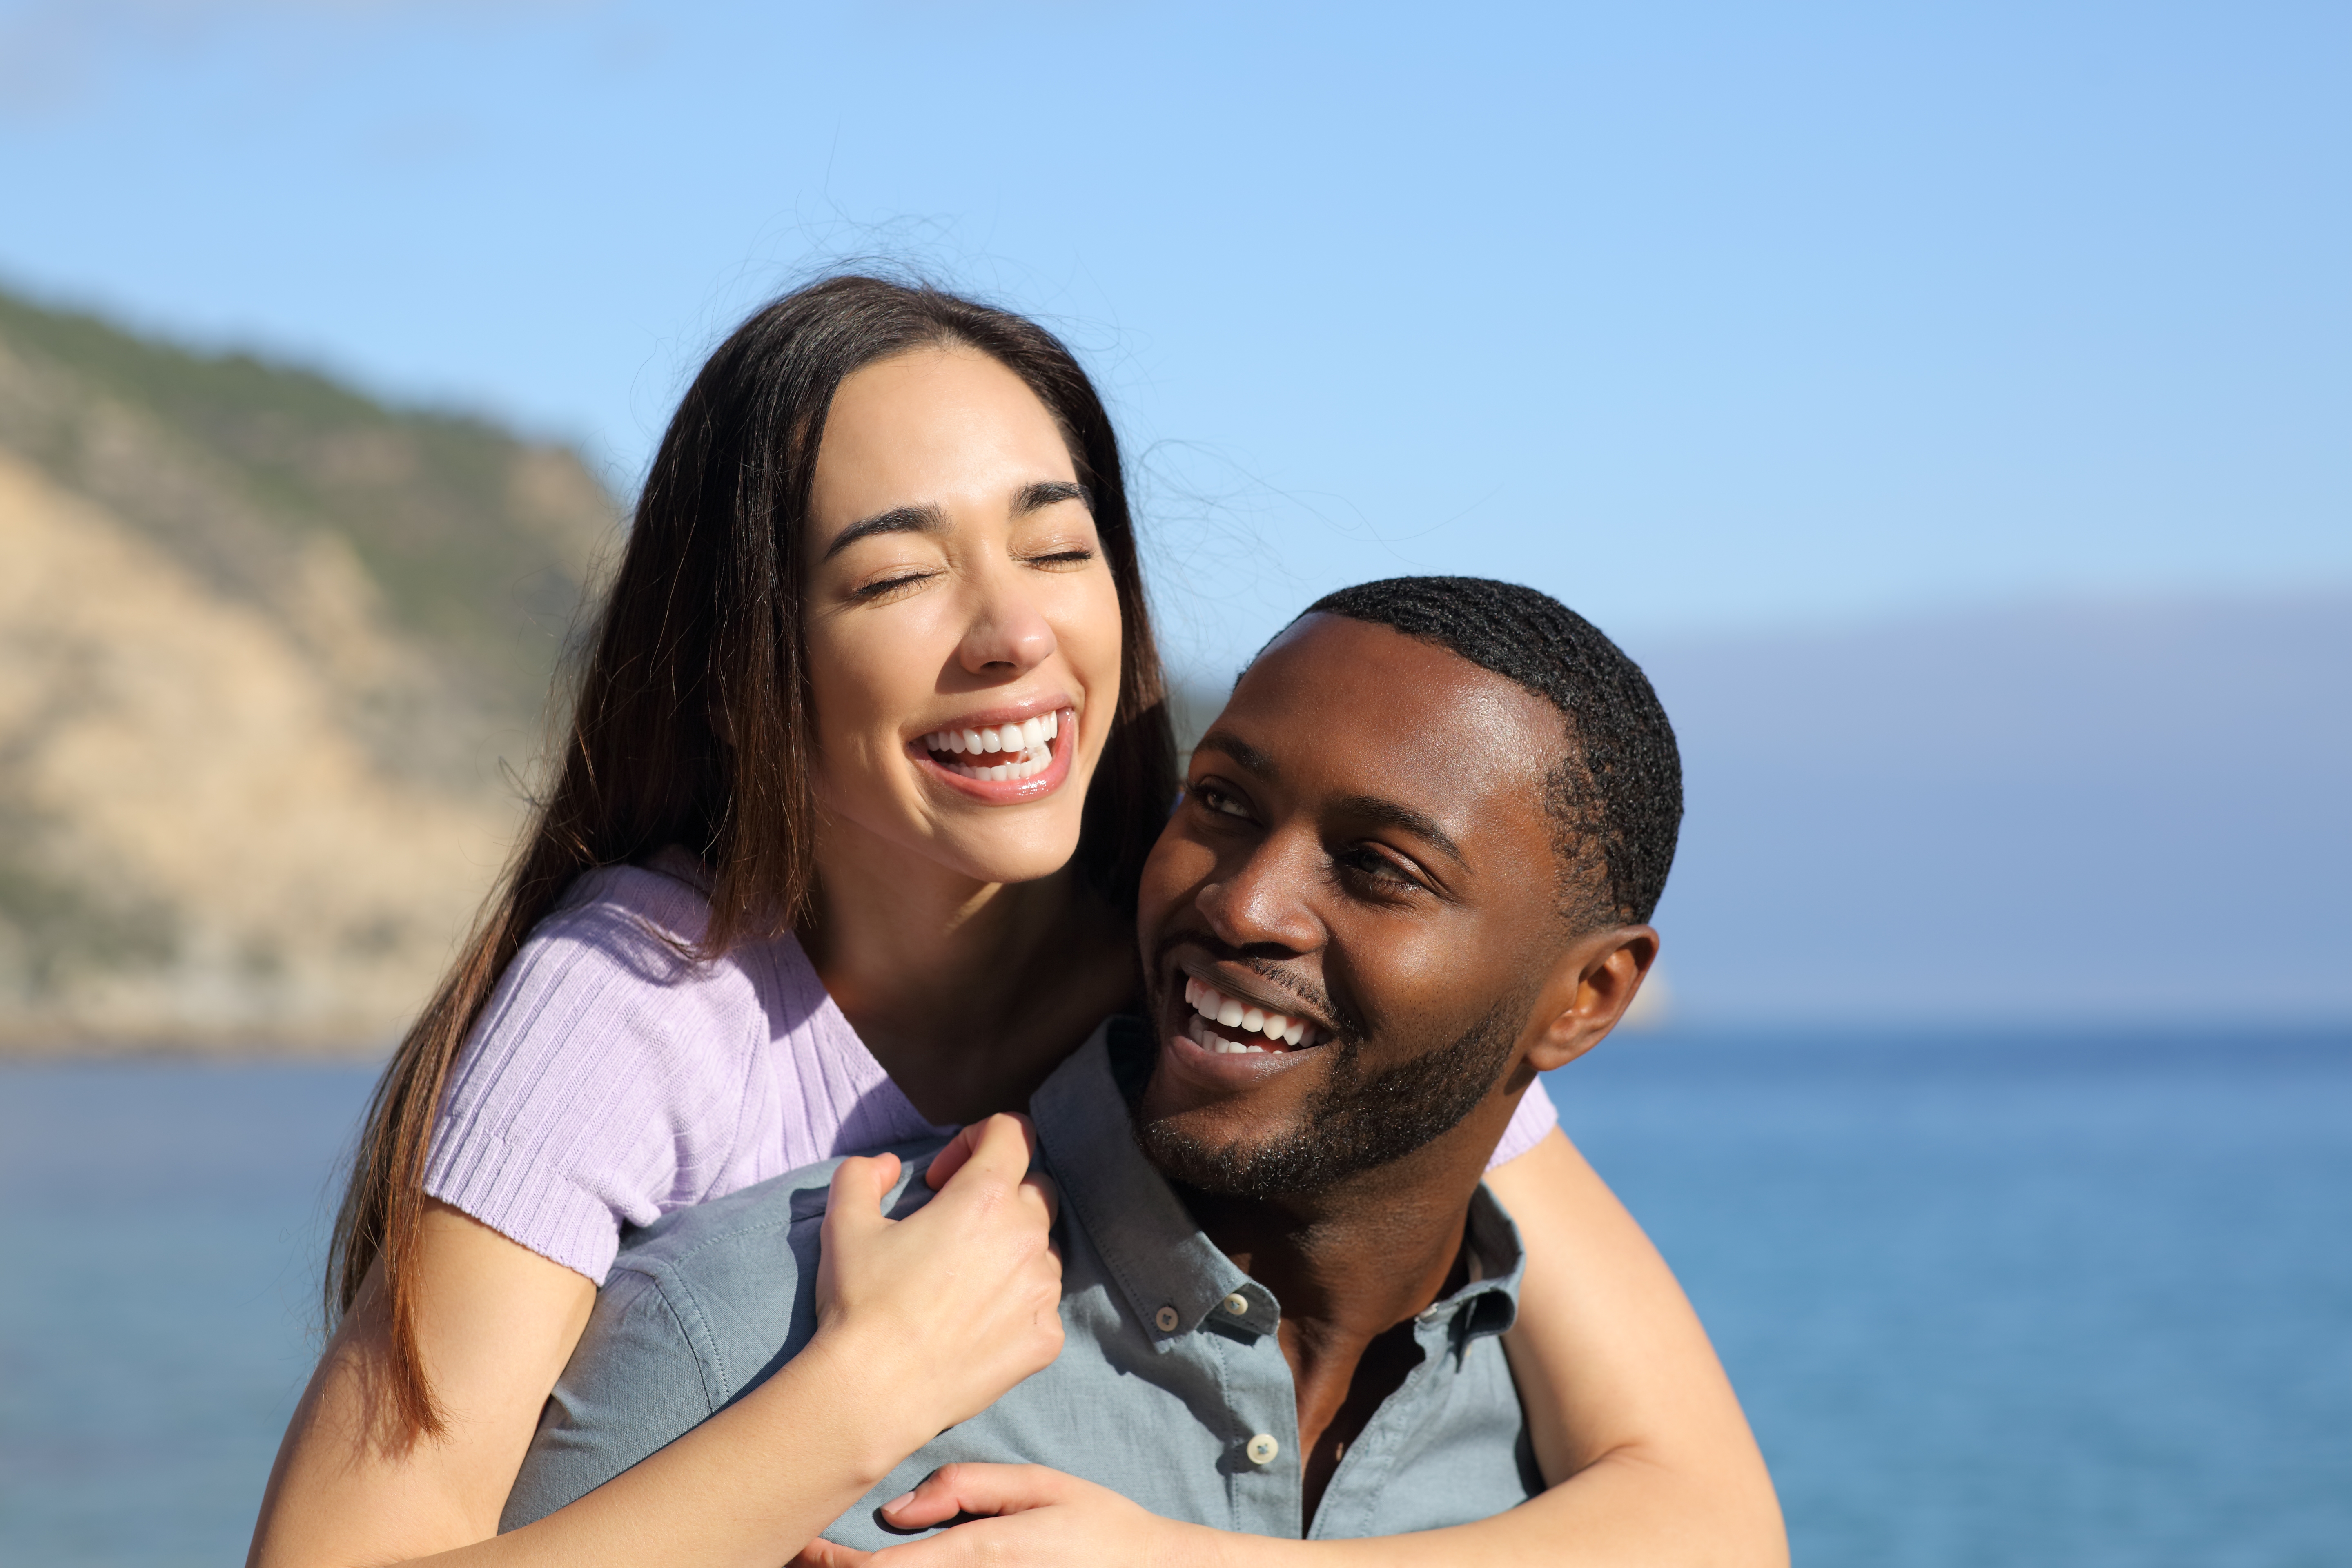 Ein glückliches gemischtrassiges Paar wird am Strand abgebildet | Quelle: Shutterstock